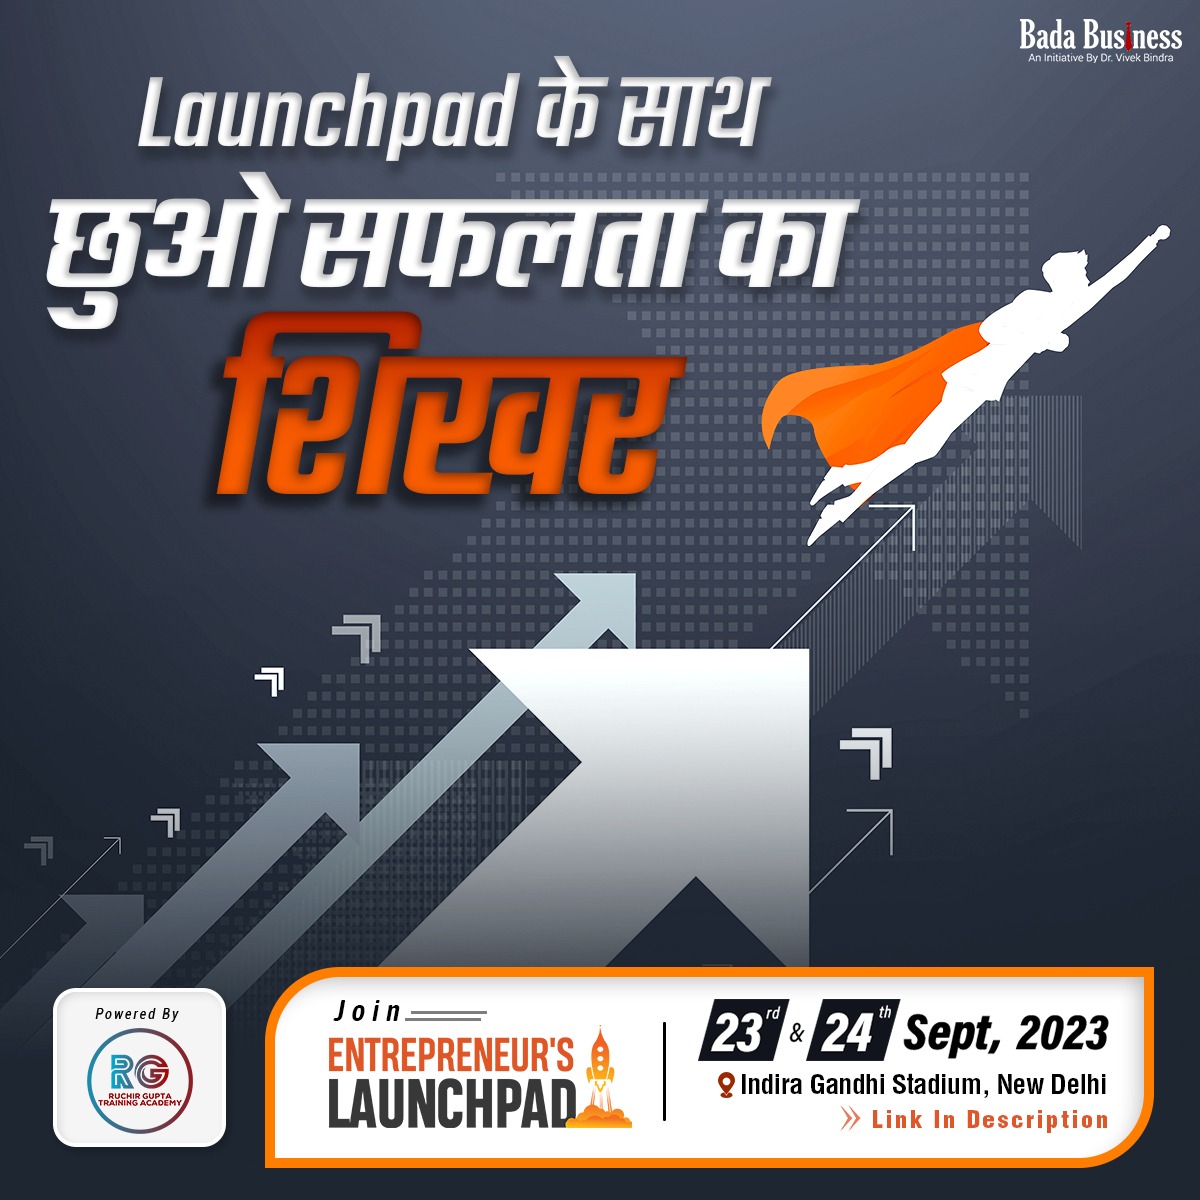 अब आप भी भर सकते हैं सफलता की उड़ान... आज ही अपनी सीट बुक करें - badabusiness.com/launchpad/ente… #Entrepreneurslaunchpad #mylaunchpad #Event #DrVivekBindra #badabusiness